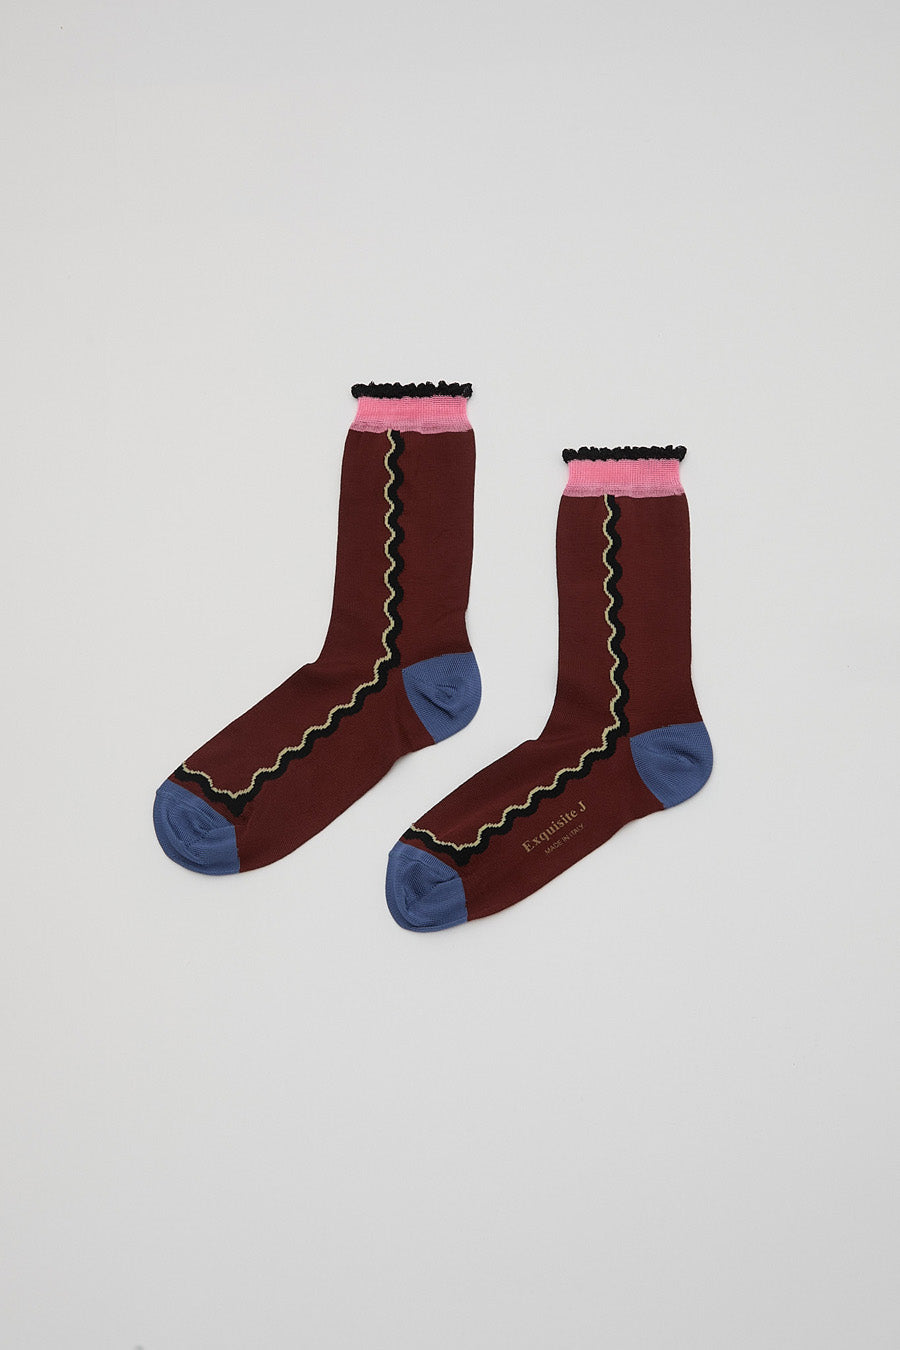 Exquisite J Ondina Socks in Rust